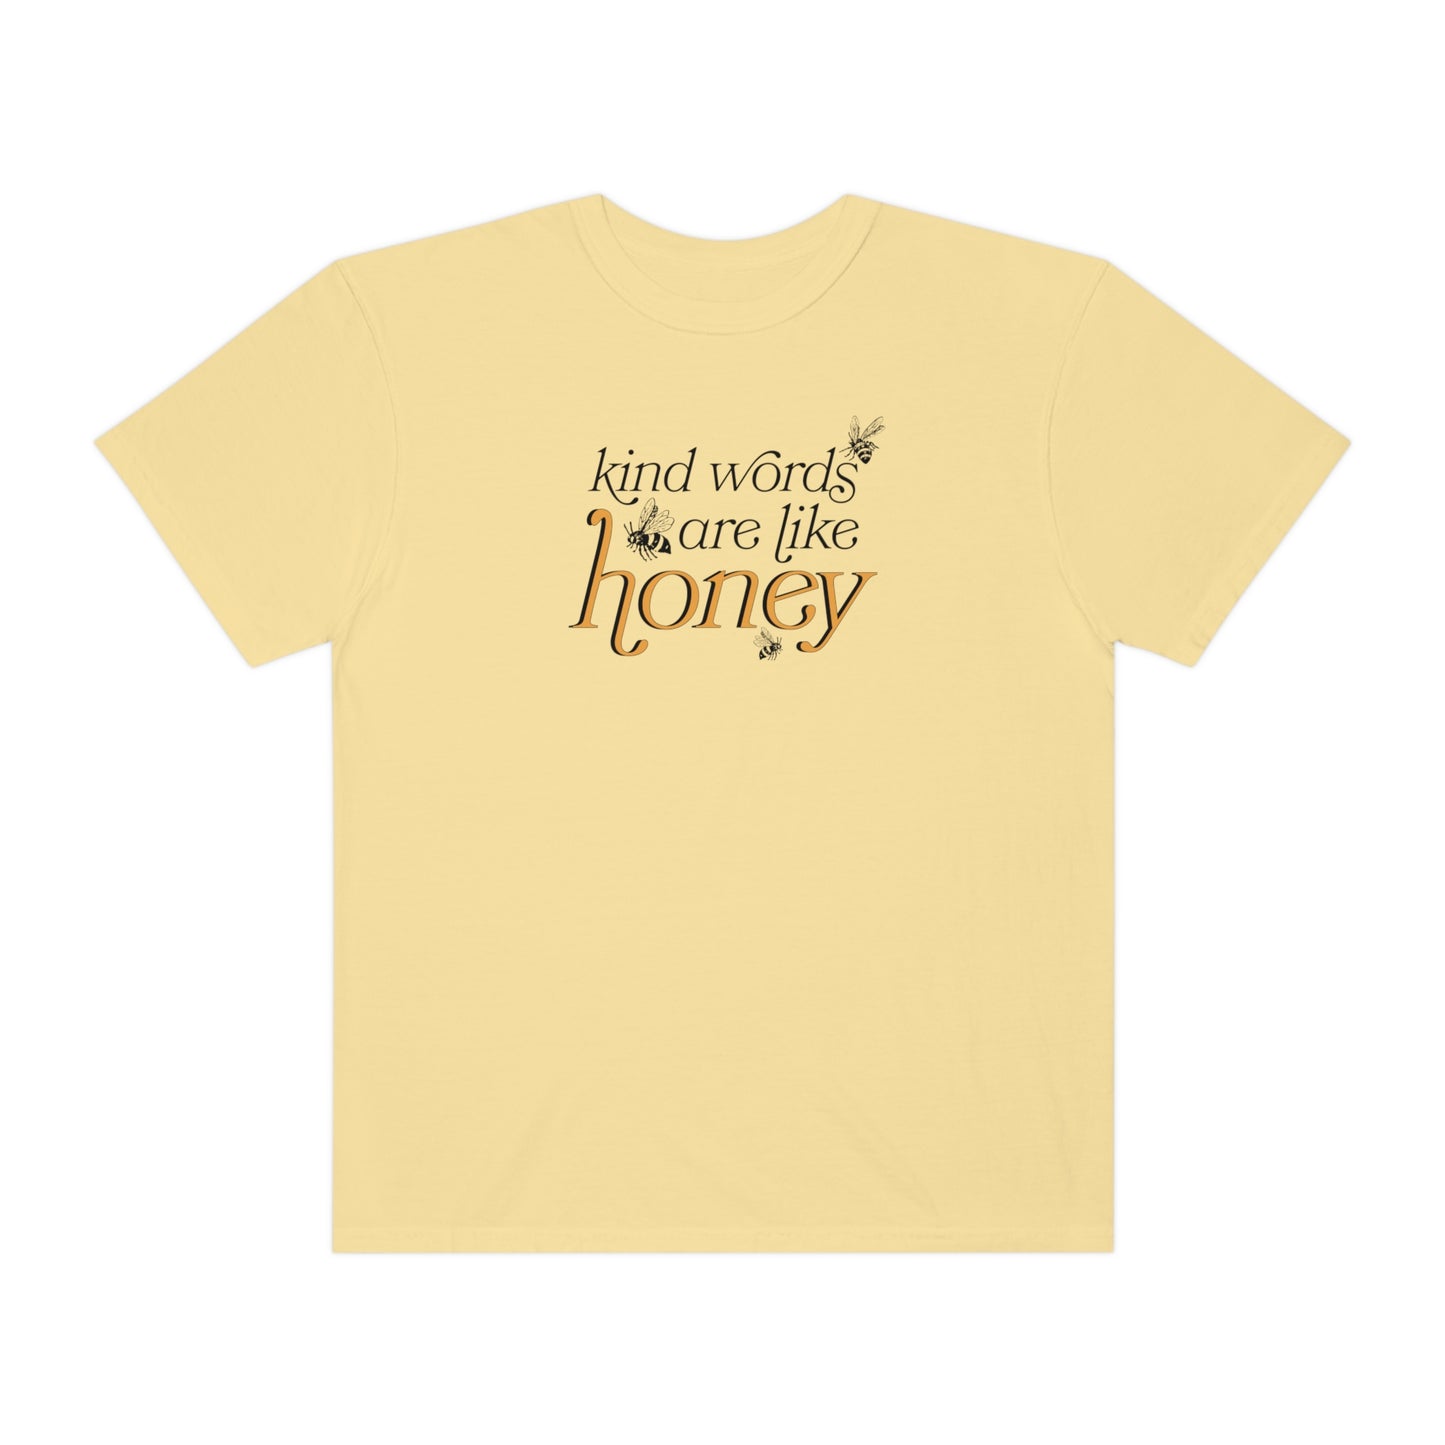 LIKE HONEY | Faith-Inspired Graphic T-Shirt | Original Design | High Quality